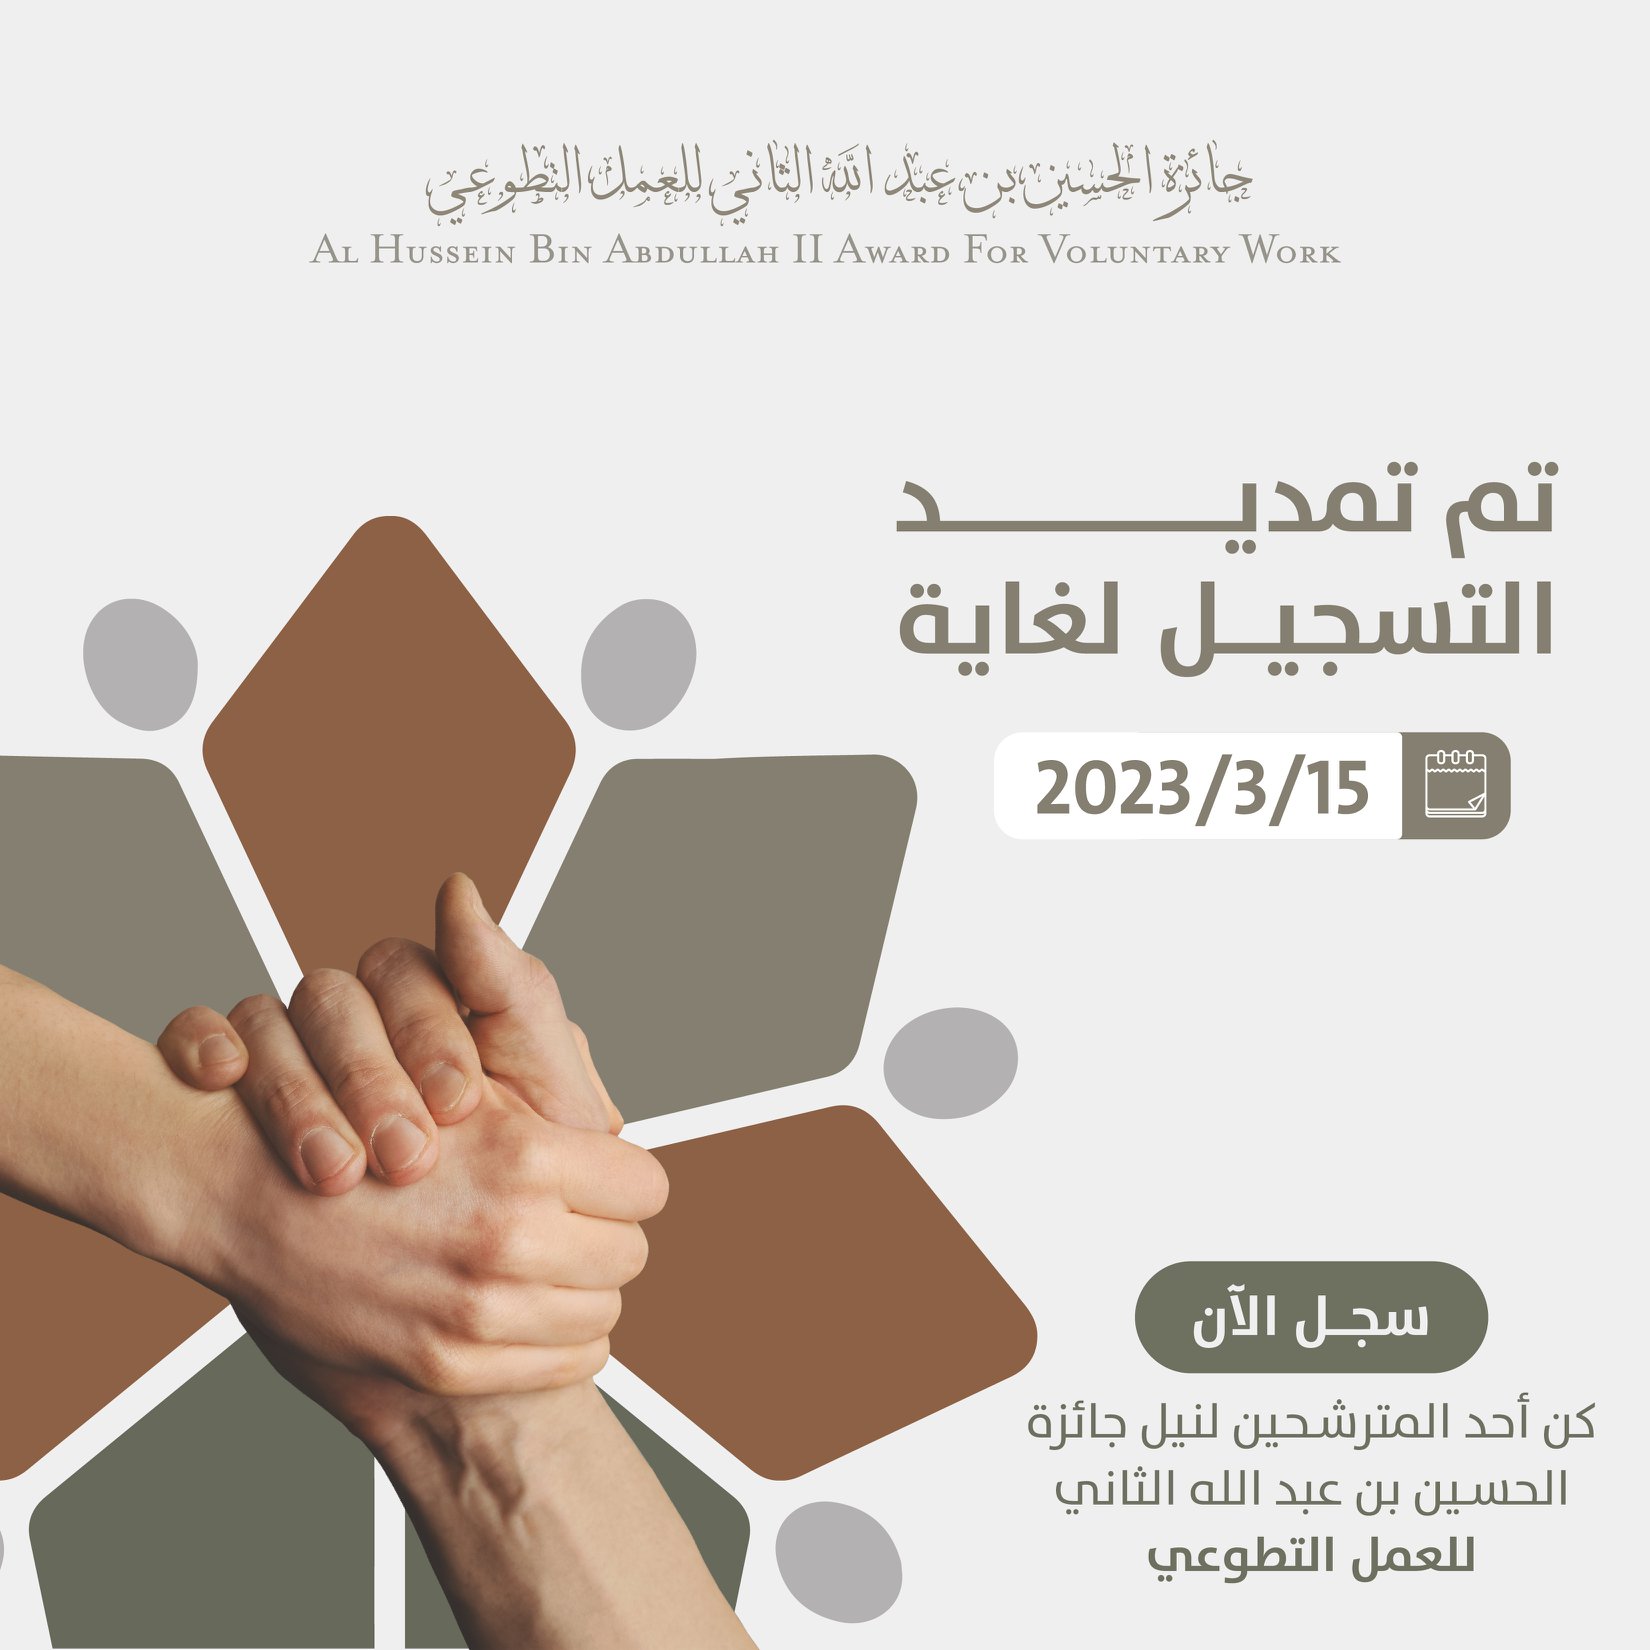 تمديد التسجيل في جائزة الحسين بن عبد الله الثاني للعمل التطوعي لغاية 2023/3/15